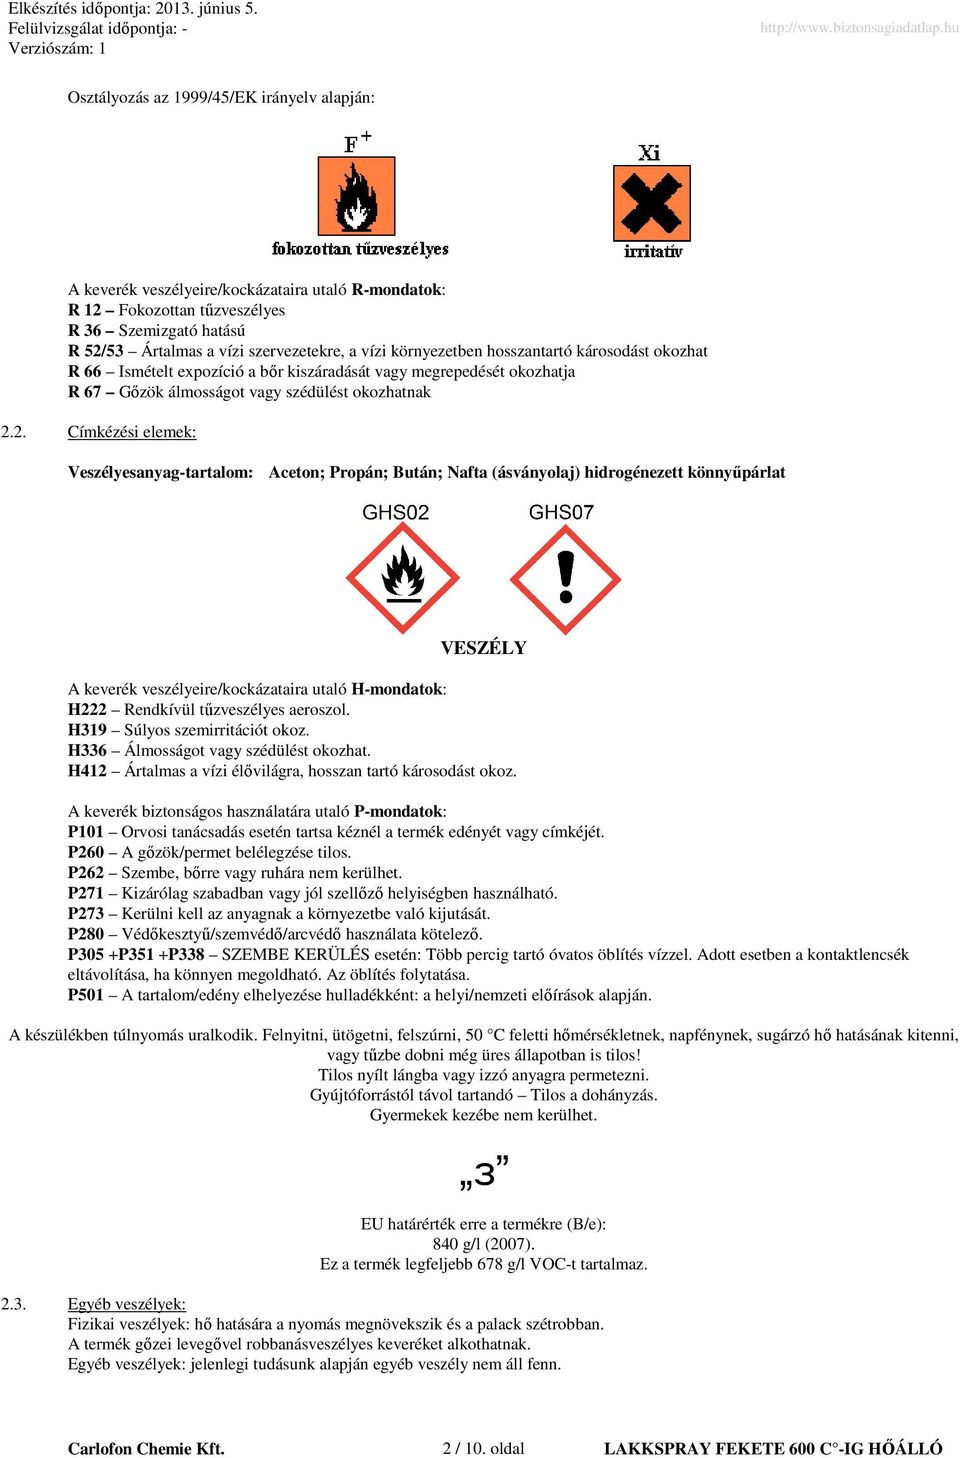 2. Címkézési elemek: esanyag-tartalom: Aceton; Propán; Bután; Nafta (ásványolaj) hidrogénezett könnyőpárlat VESZÉLY A keverék veszélyeire/kockázataira utaló H-mondatok: H222 Rendkívül tőzveszélyes